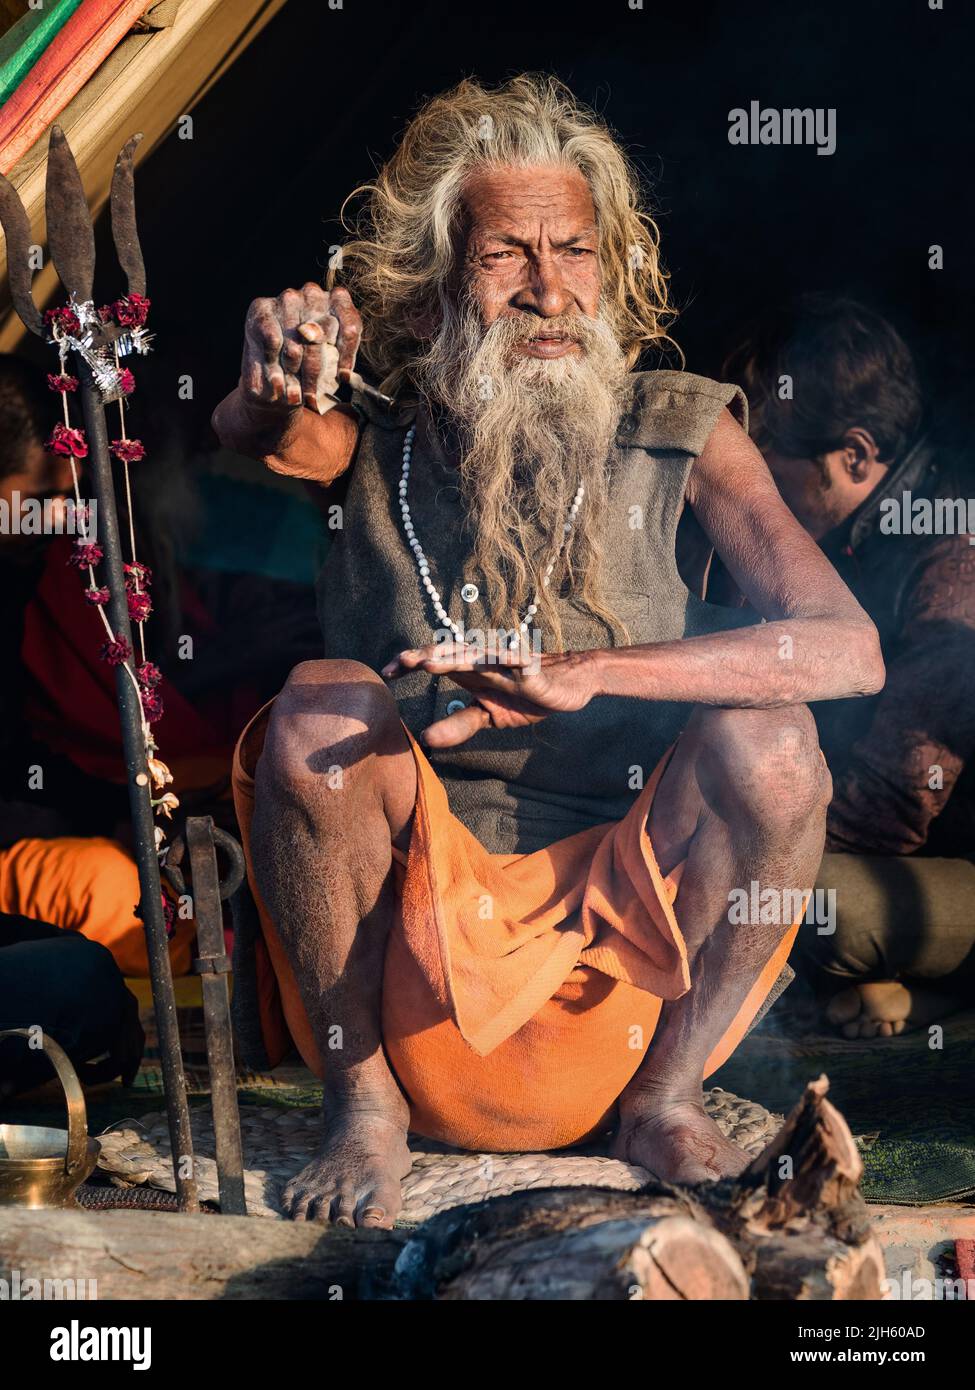 Der heilige indische Mann Amar Bharati Urdhavaahu, der seinen Arm zu Ehren des Hindu-Gottes Shiva seit über 40 Jahren angehoben hat, beim Kumbh Mela Festival in Indien. Stockfoto